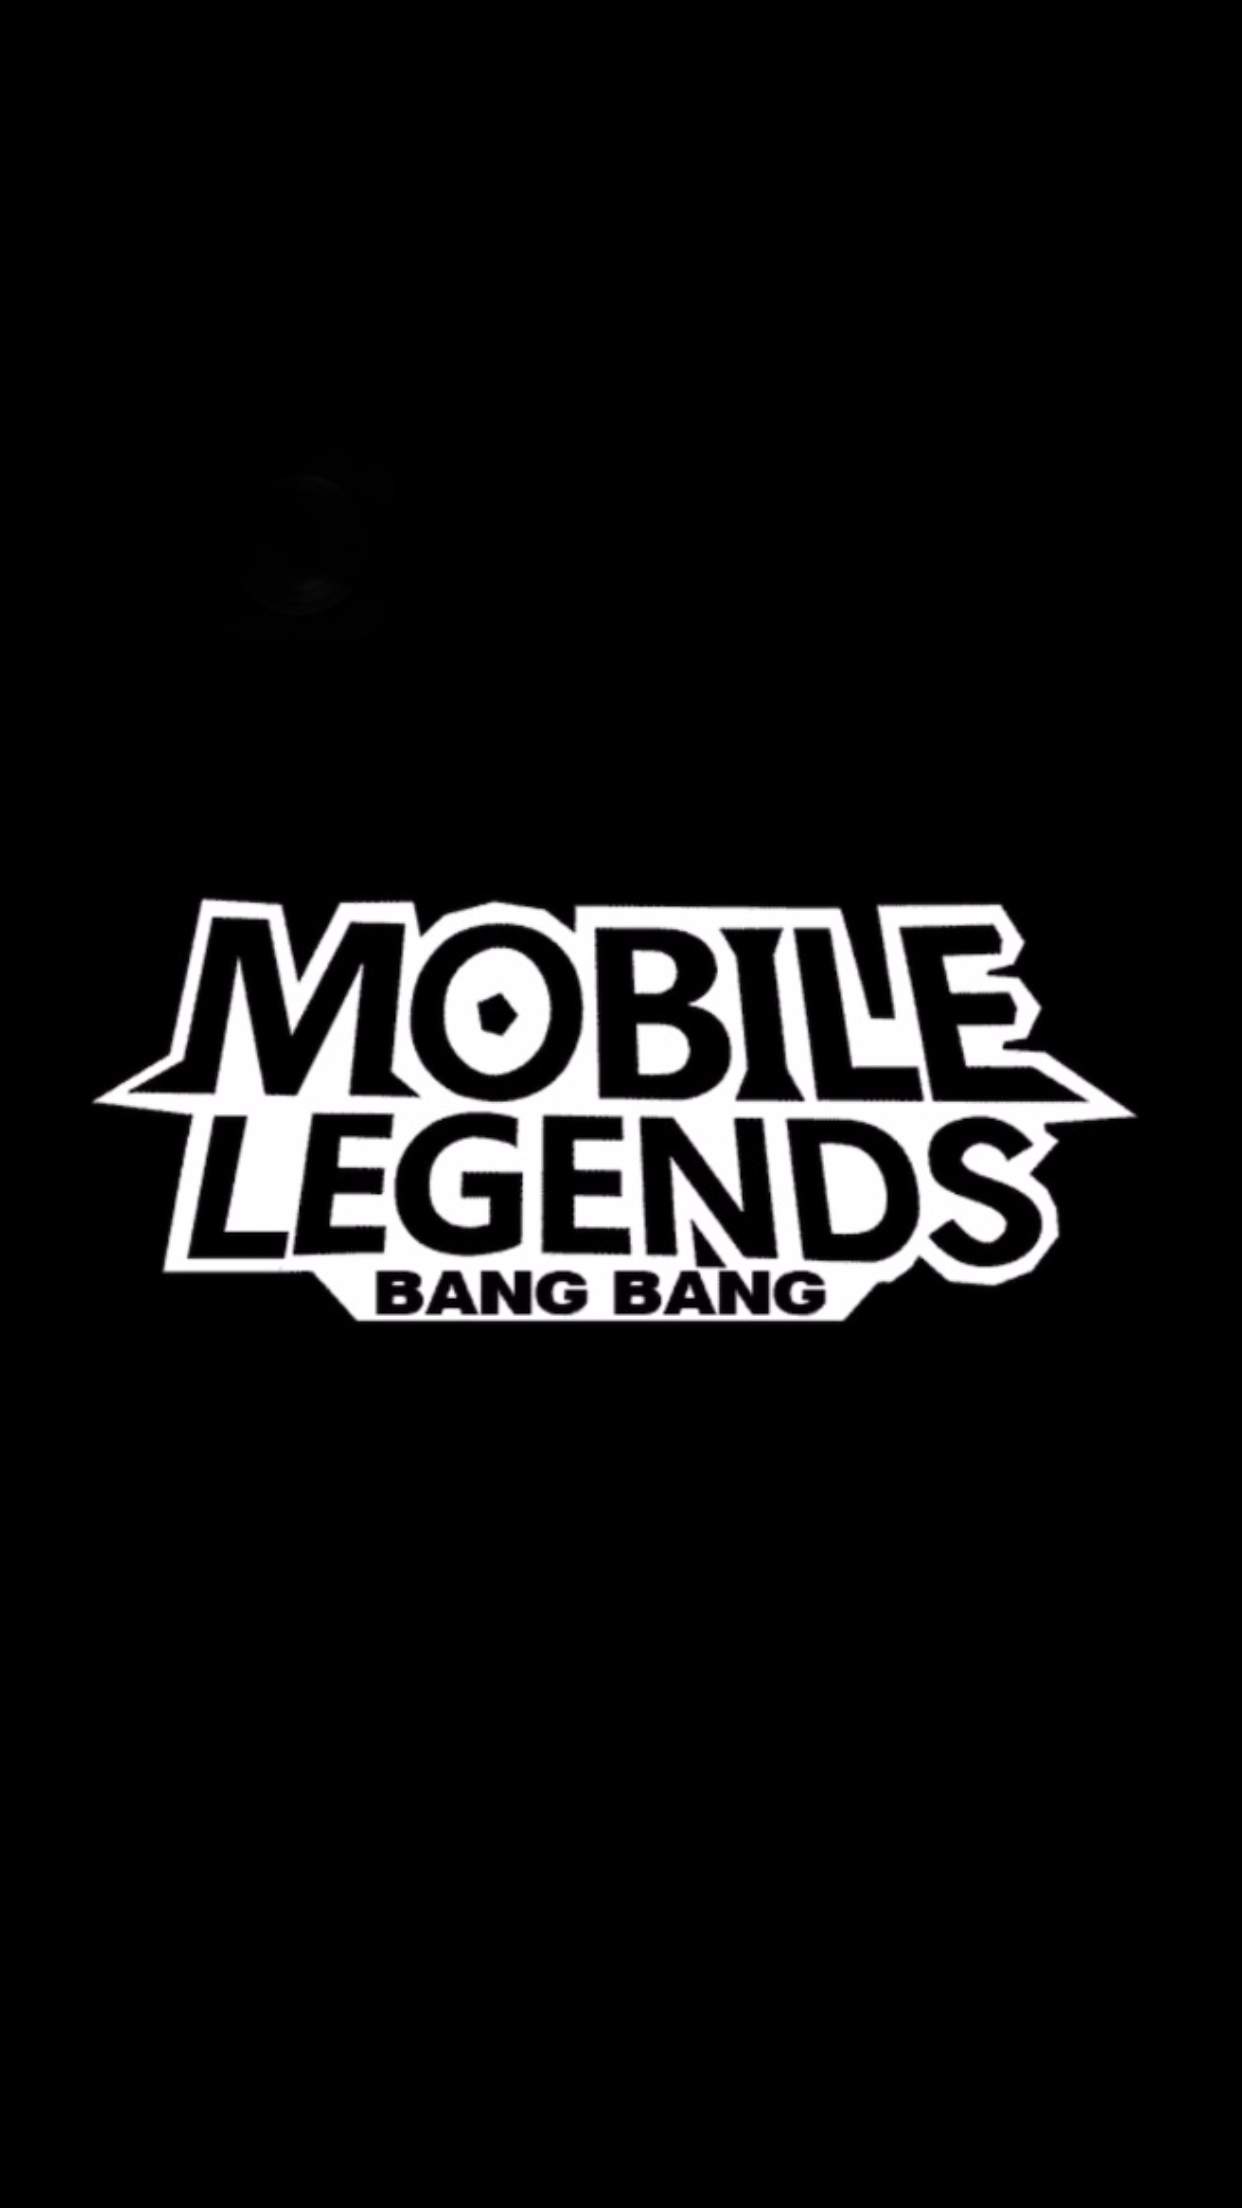 Logo Legend Mobile Legend Png